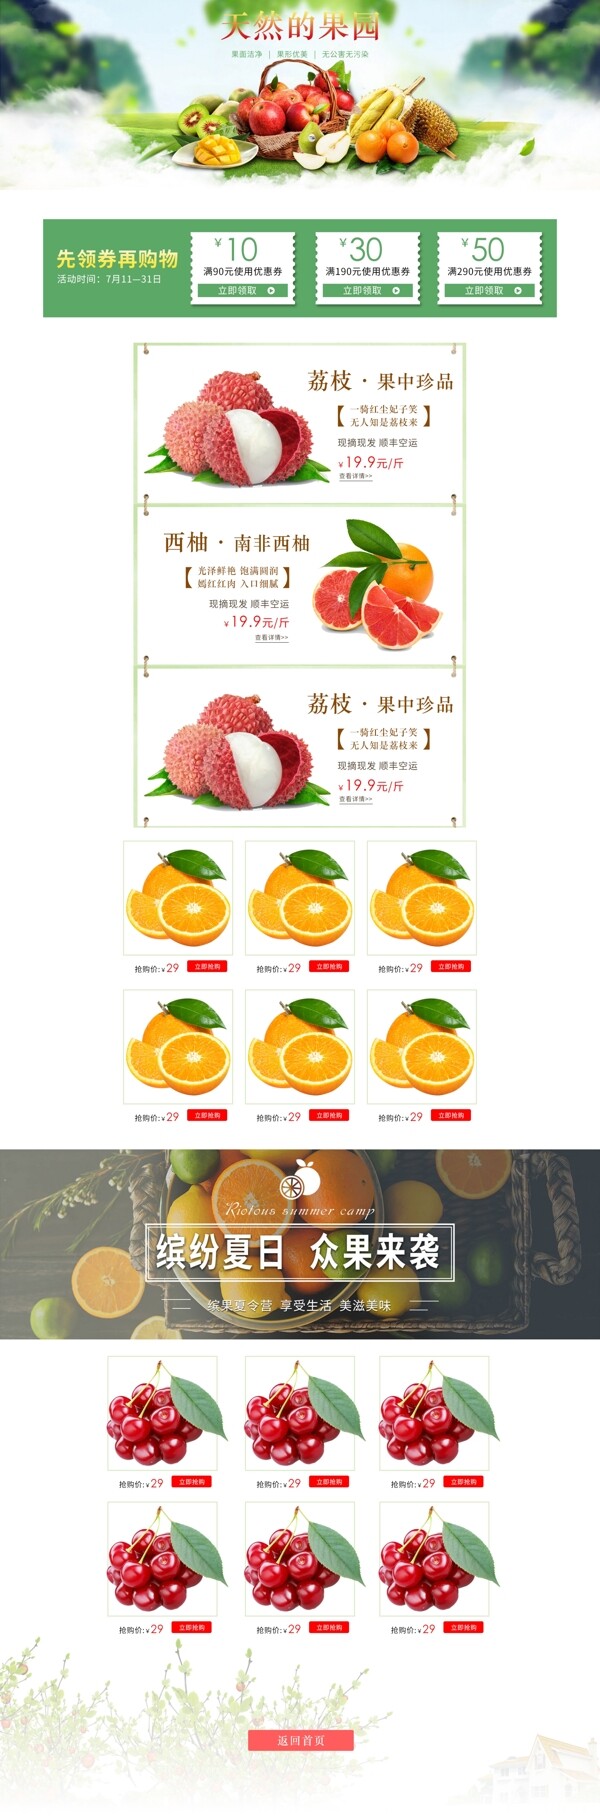 水果首页模水果海报素材水果